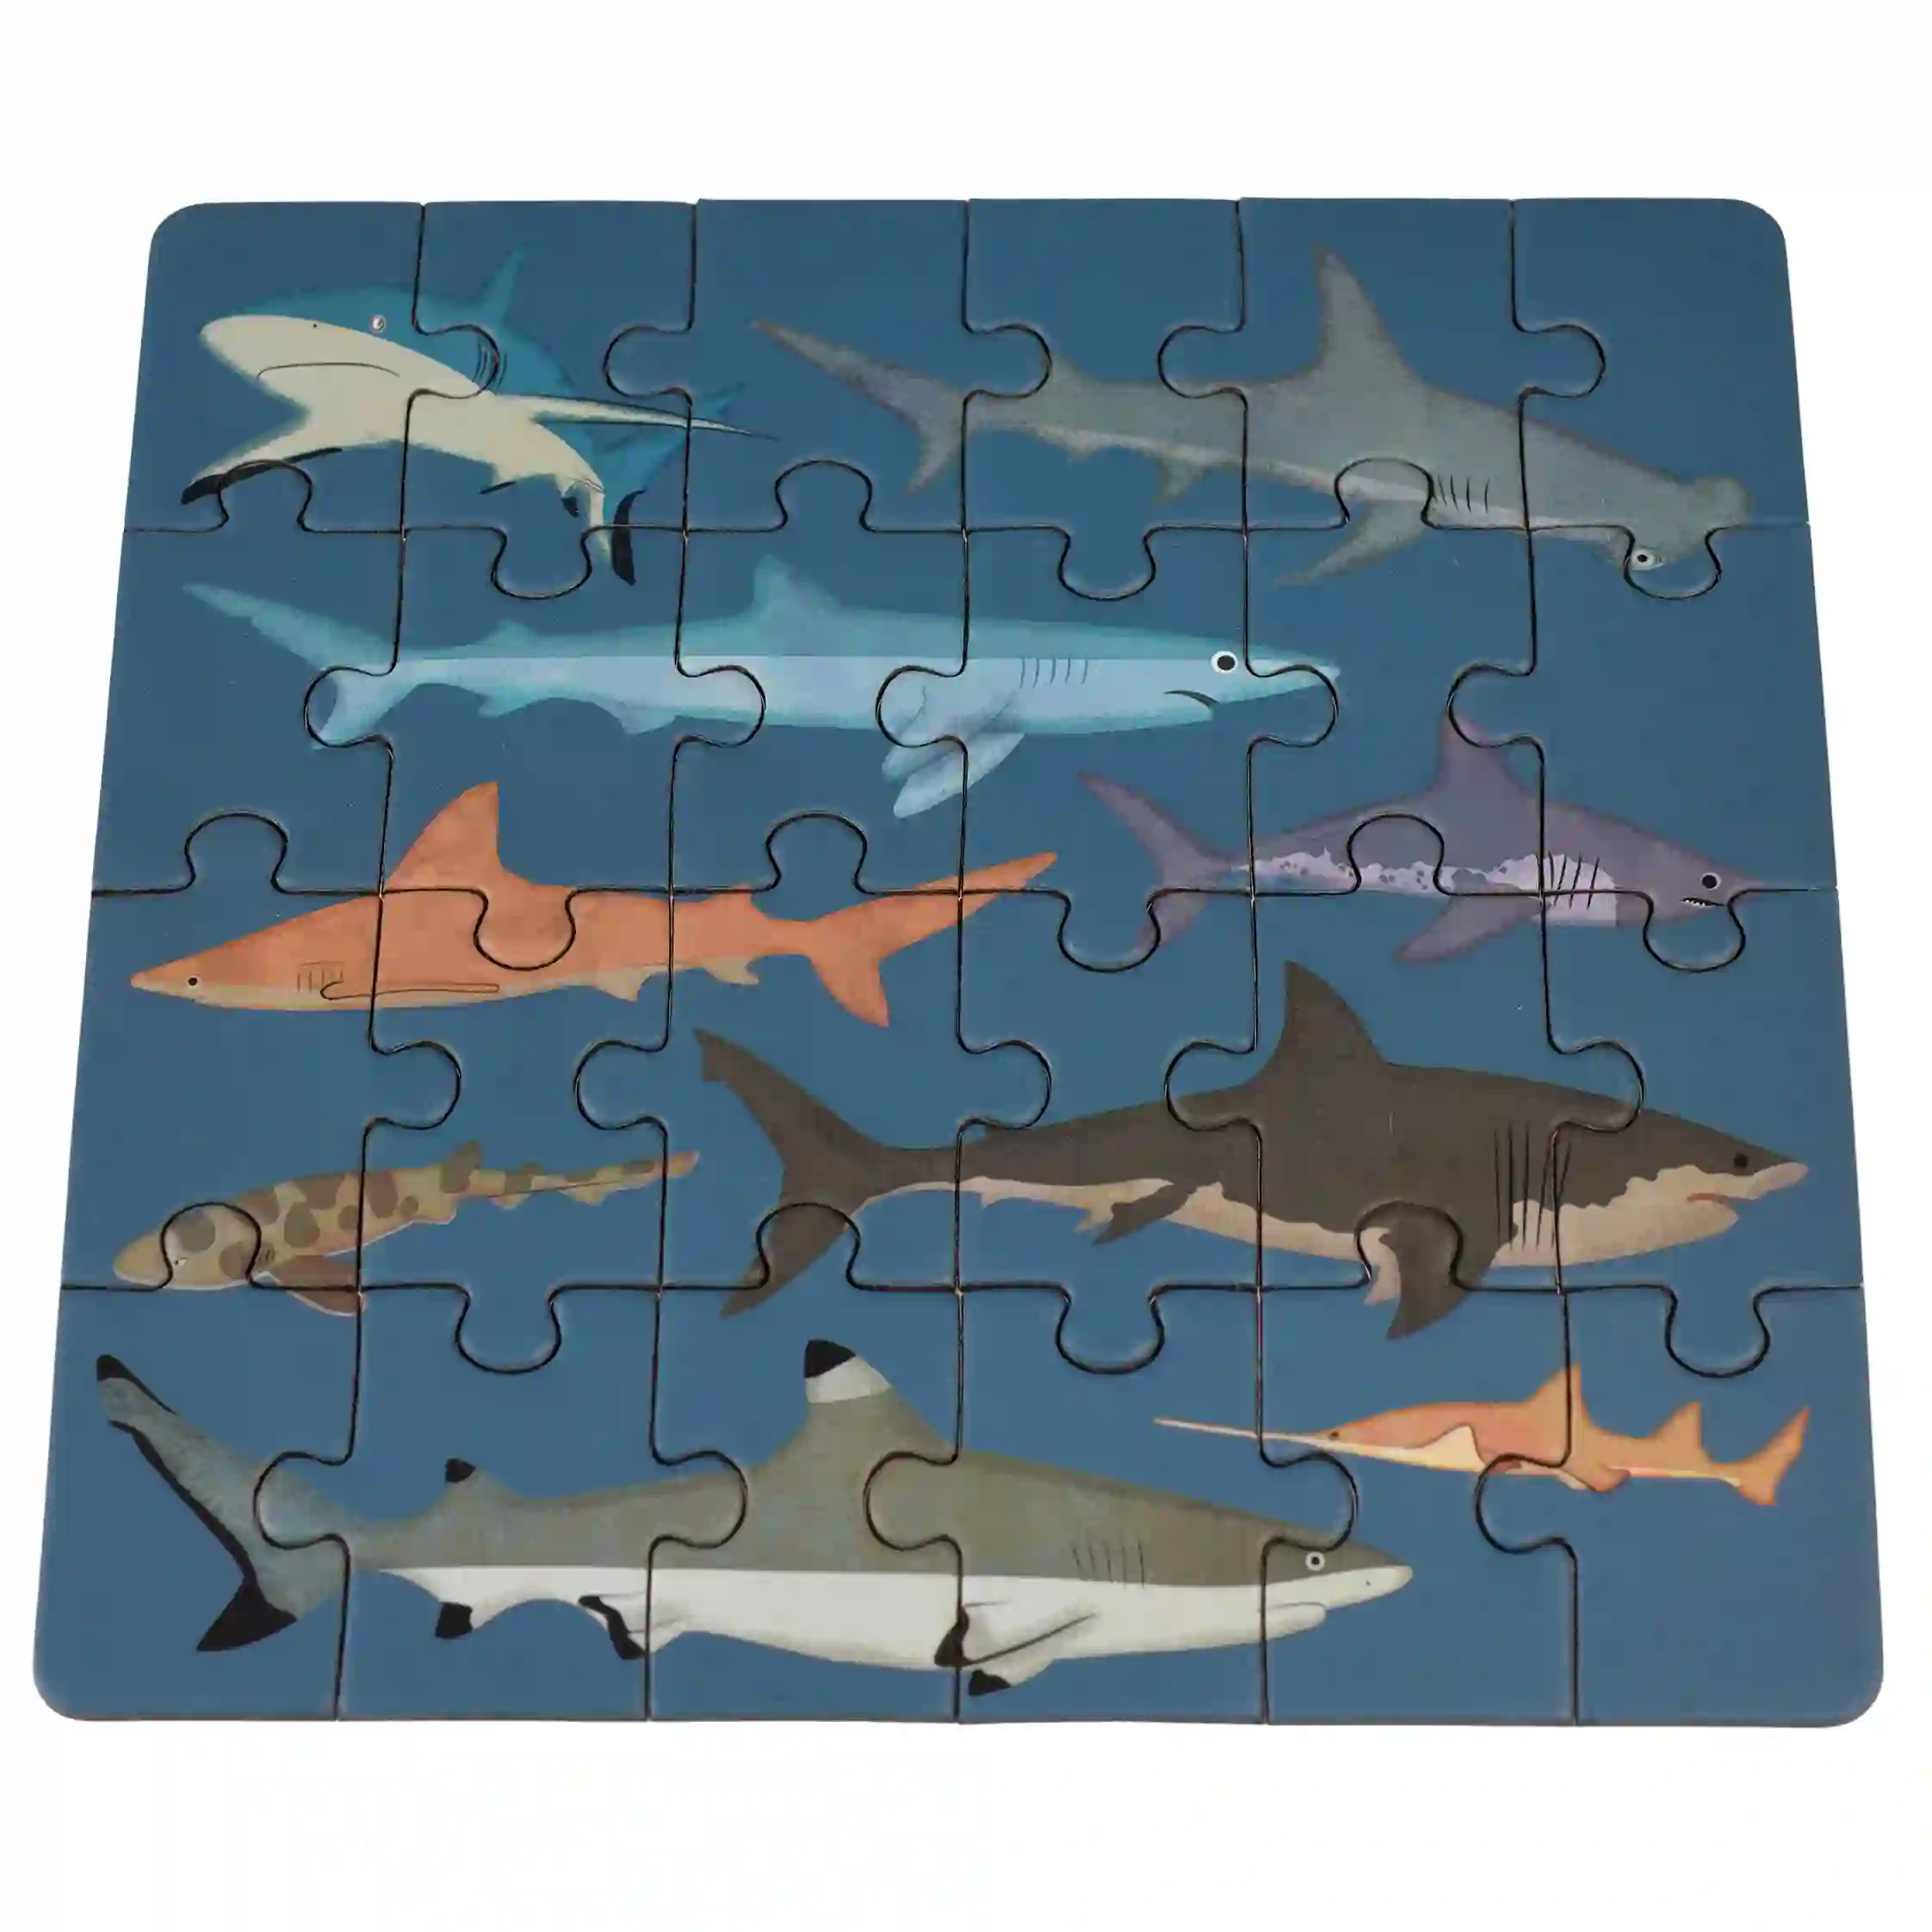 mini jigsaw puzzle - sharks